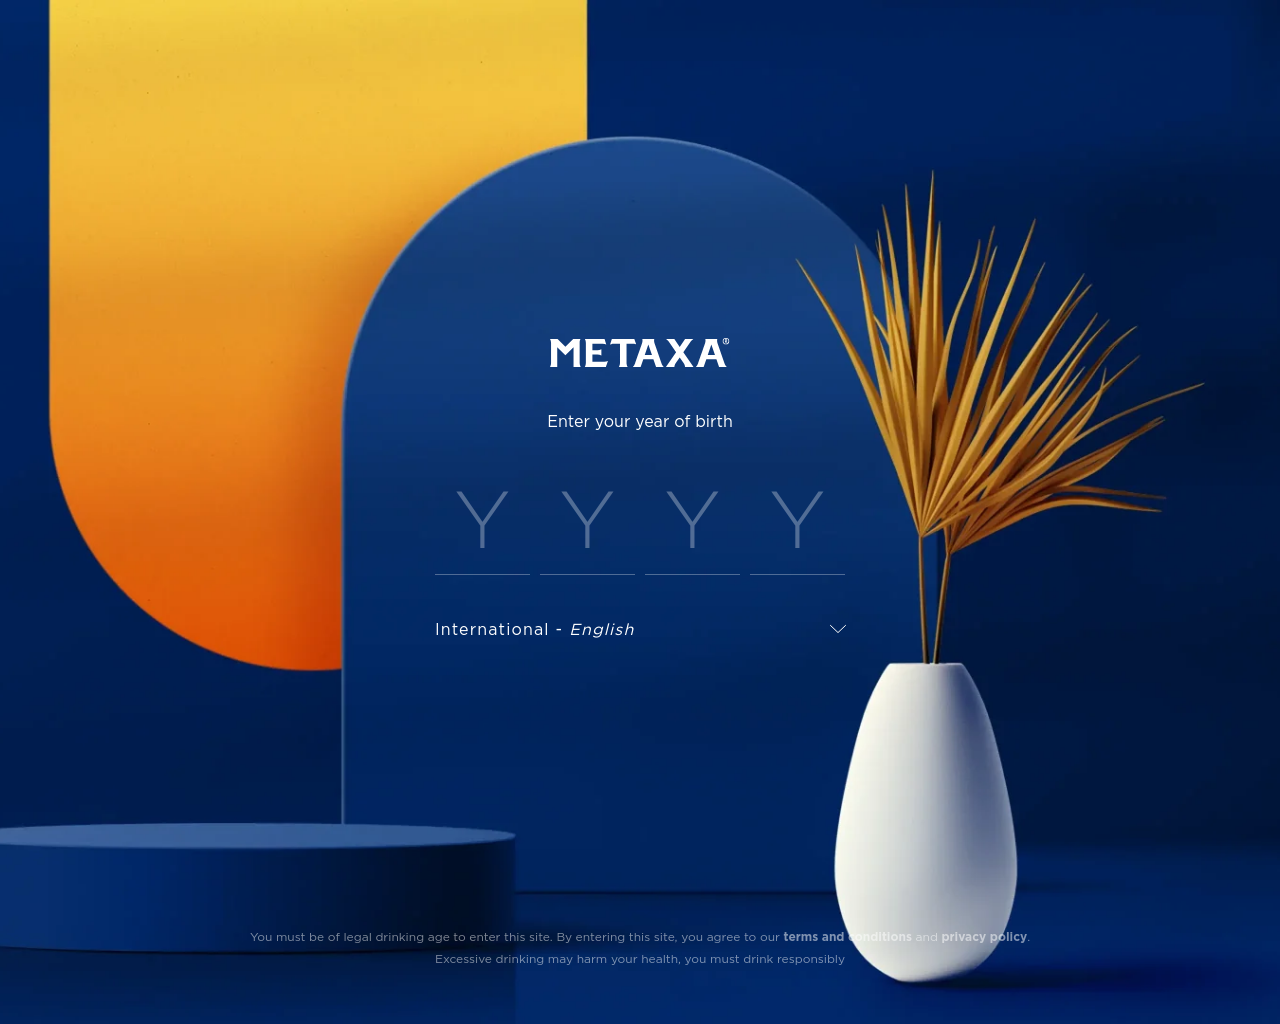 metaxa.com